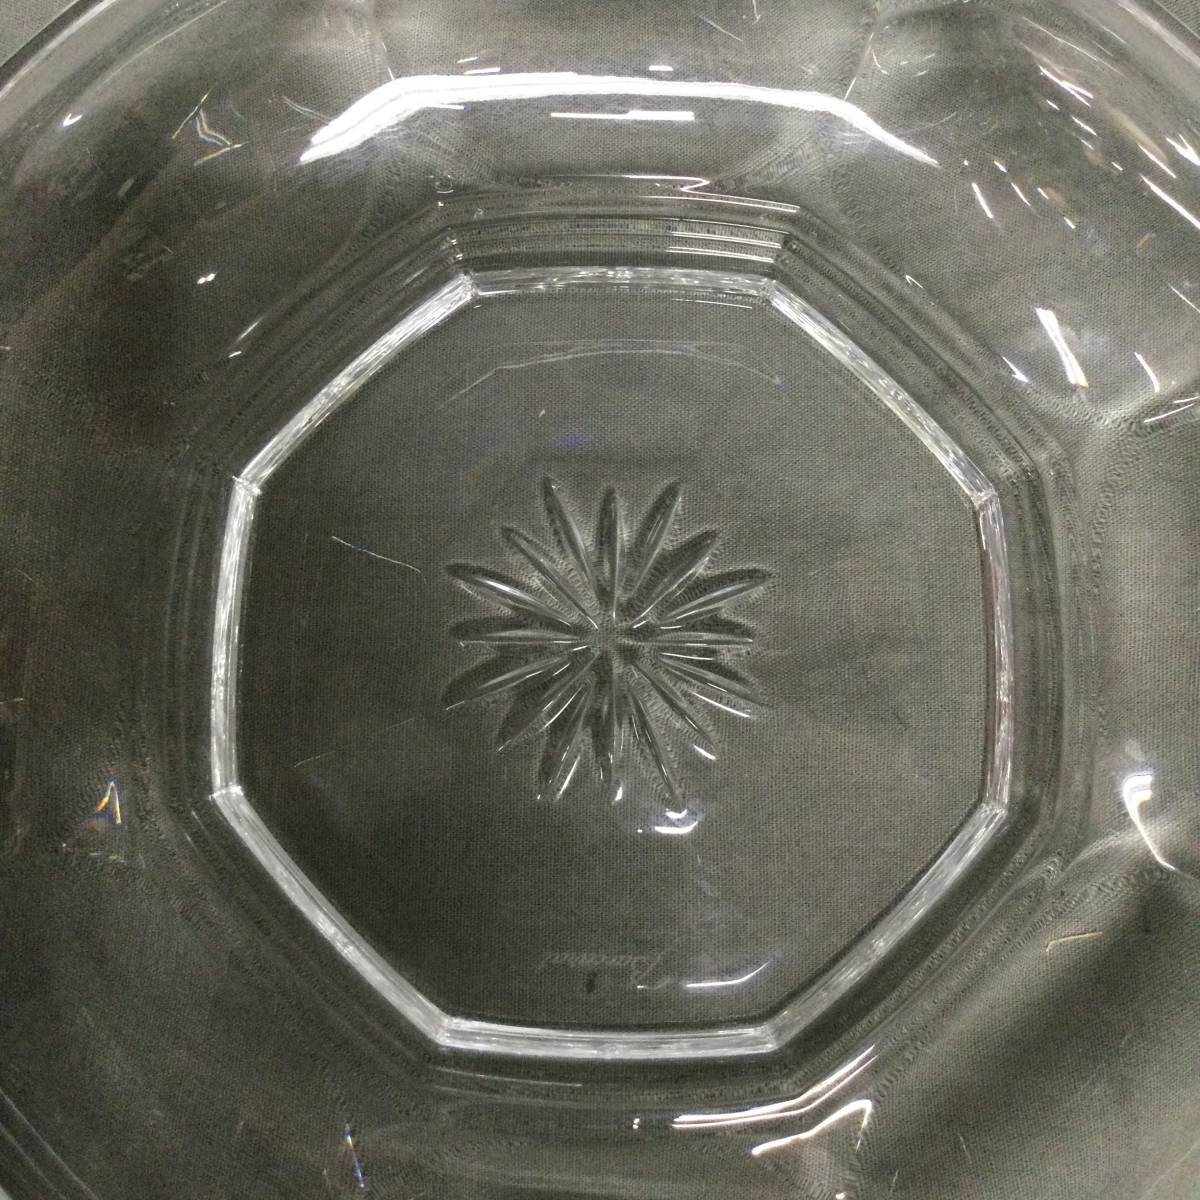 051116 249969-2 Baccarat バカラ ボウル ボール サラダボウル 深皿 クリスタル ガラス テーブルウェア 食器 洋食器 箱付の画像5